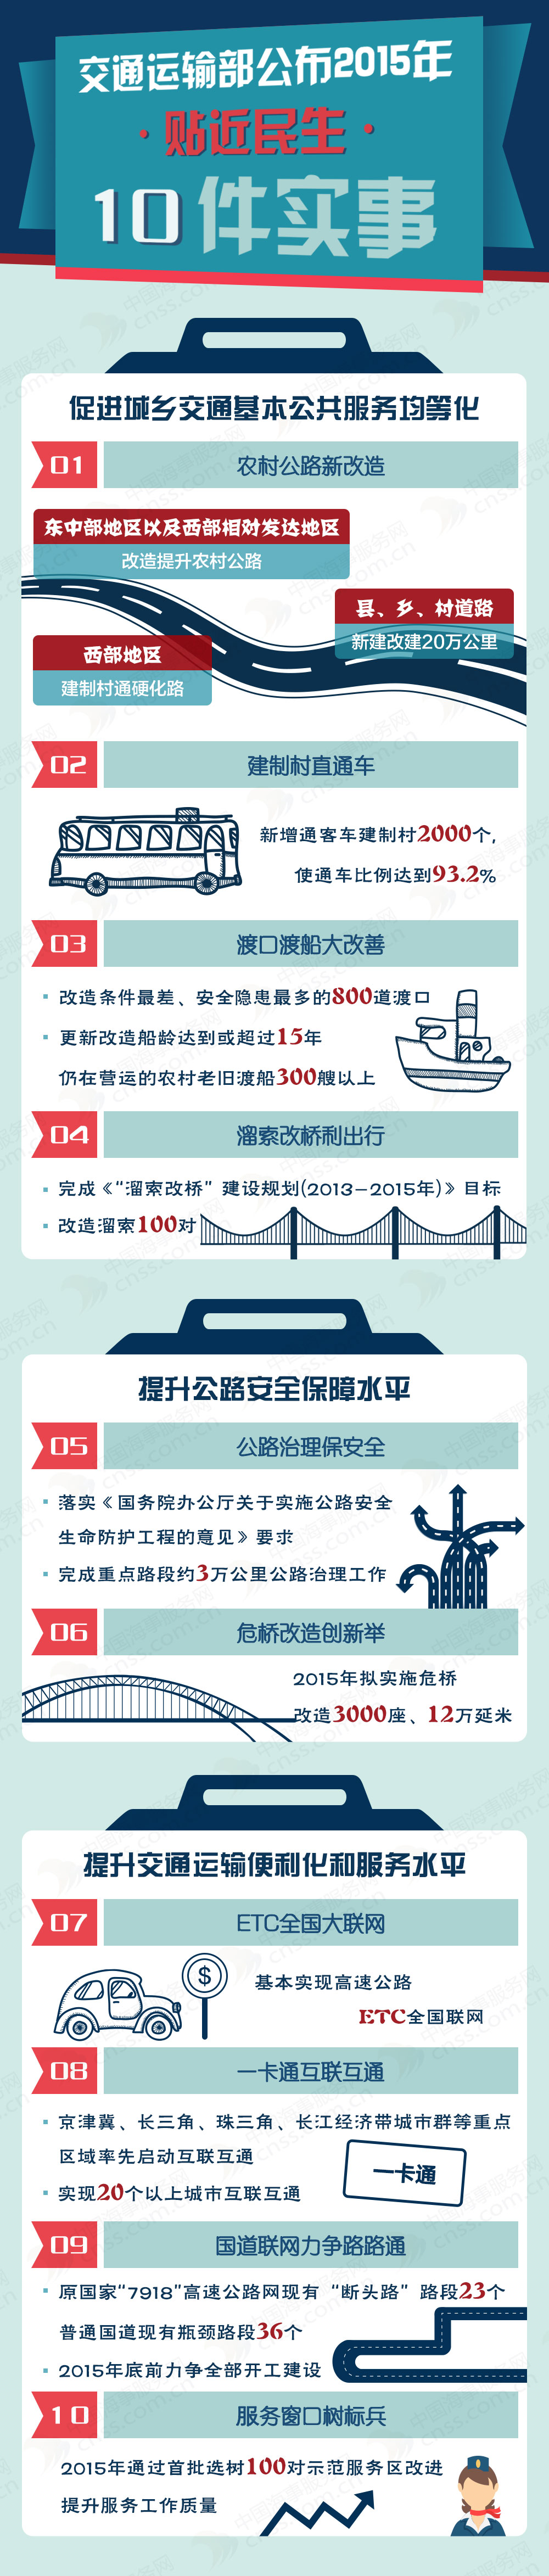 【图解】交通运输部公布2015年贴近民生10件实事